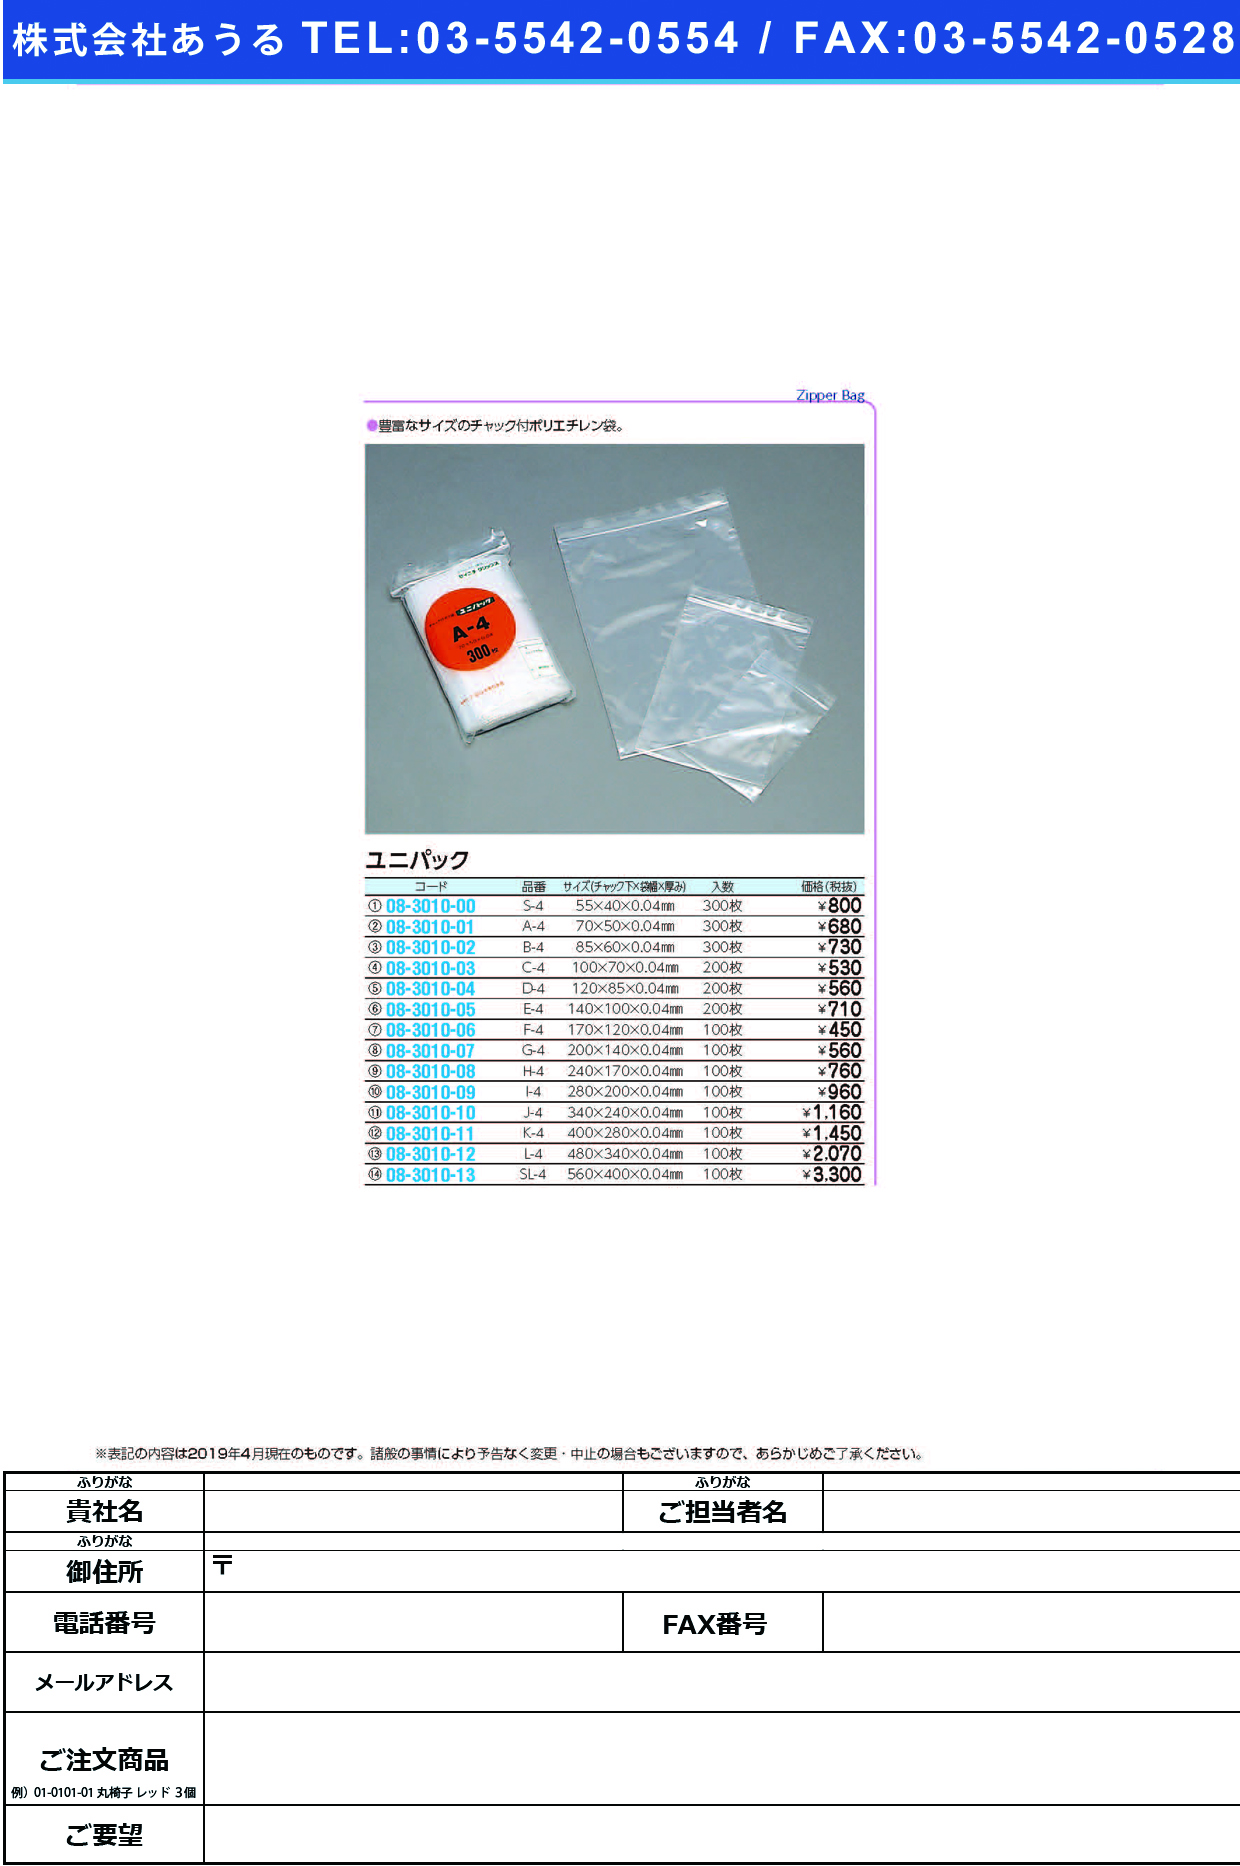 (08-3010-08)ユニパック H-4(240X170MM)100ﾏｲ ﾕﾆﾊﾟｯｸ【1袋単位】【2019年カタログ商品】